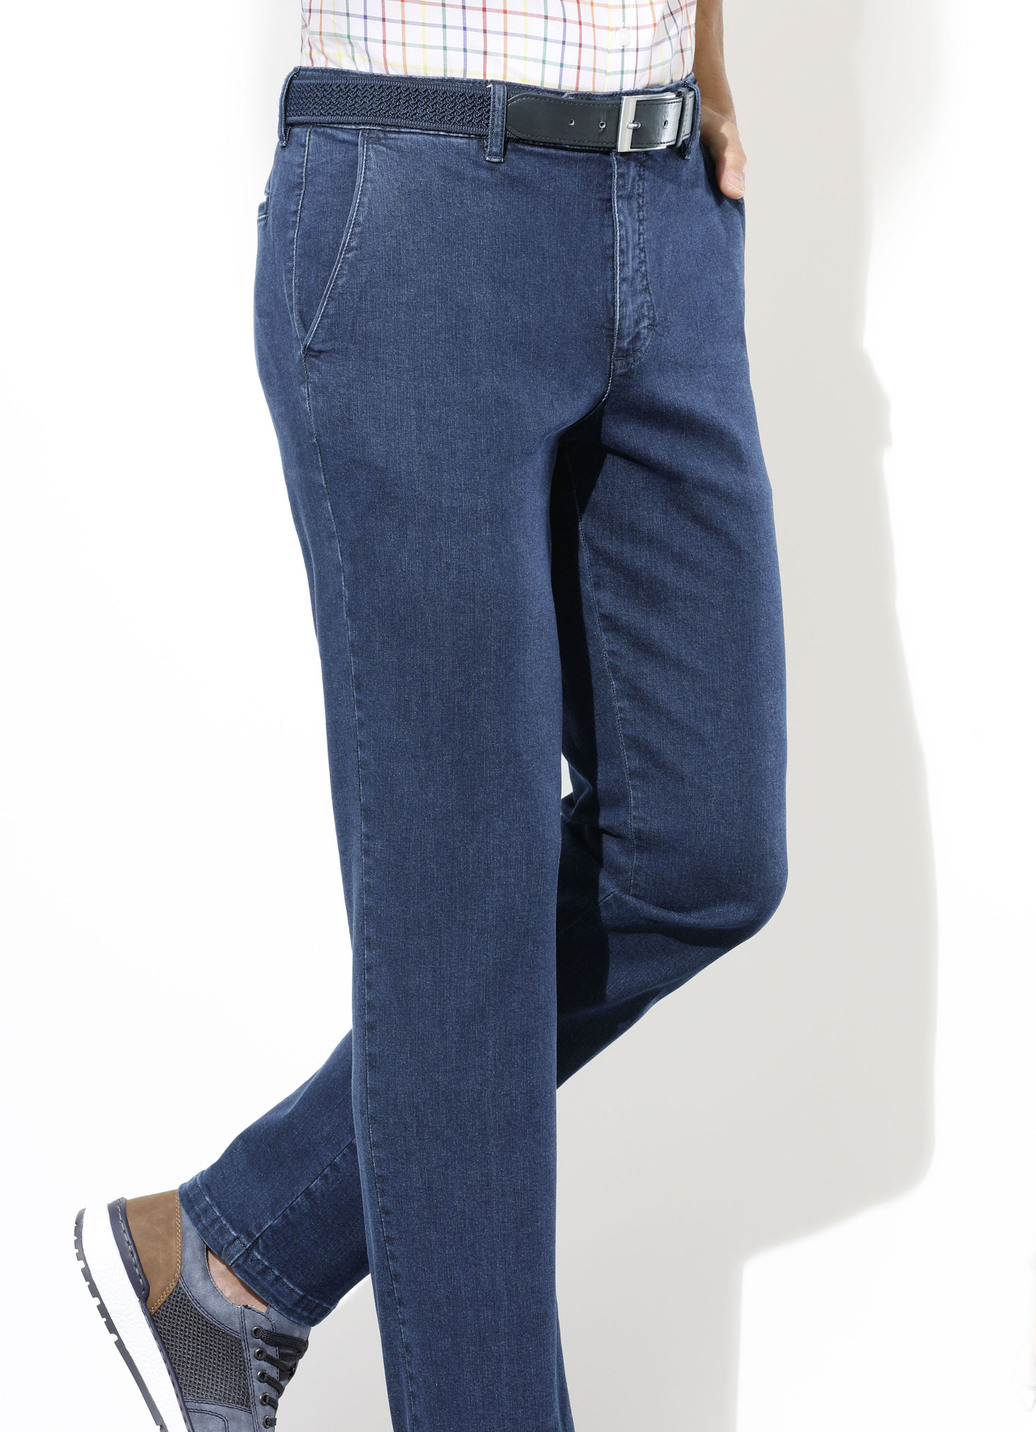 Superstretch-Jeans von "Suprax" in 4 Farben, Jeansblau, Größe 28 von Suprax